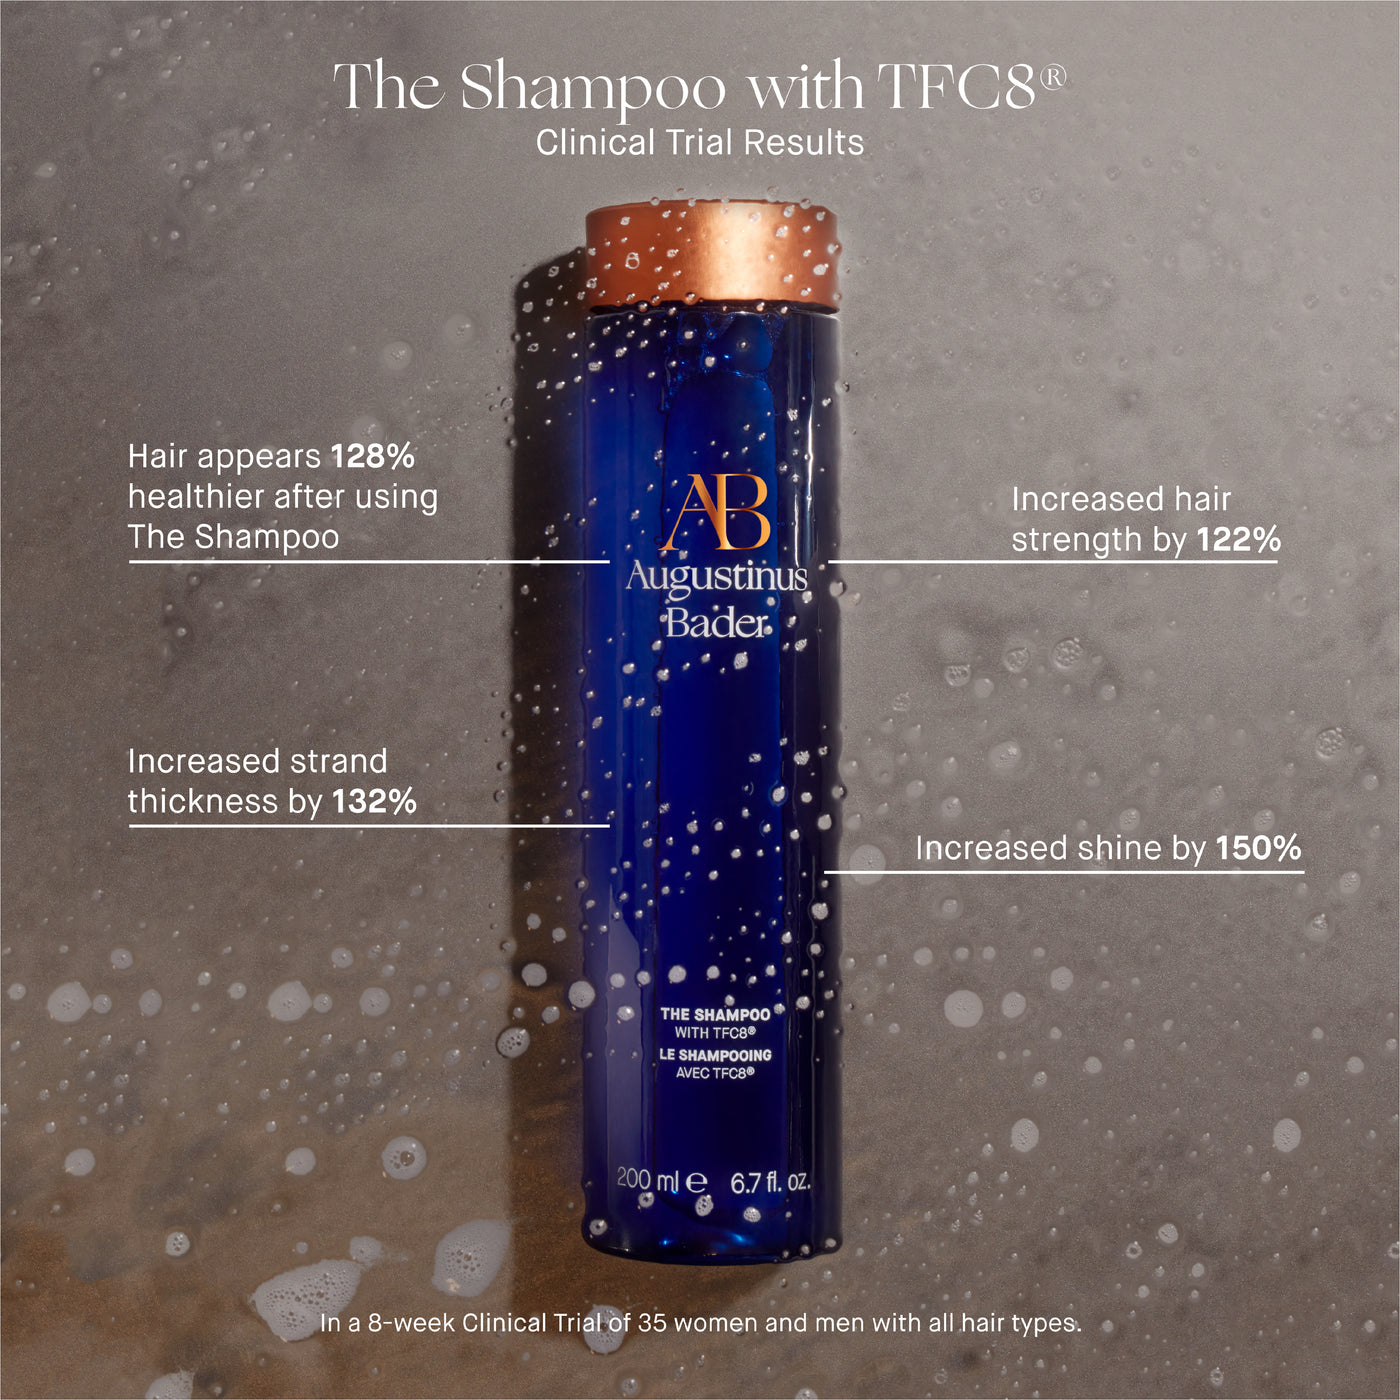 The Shampoo